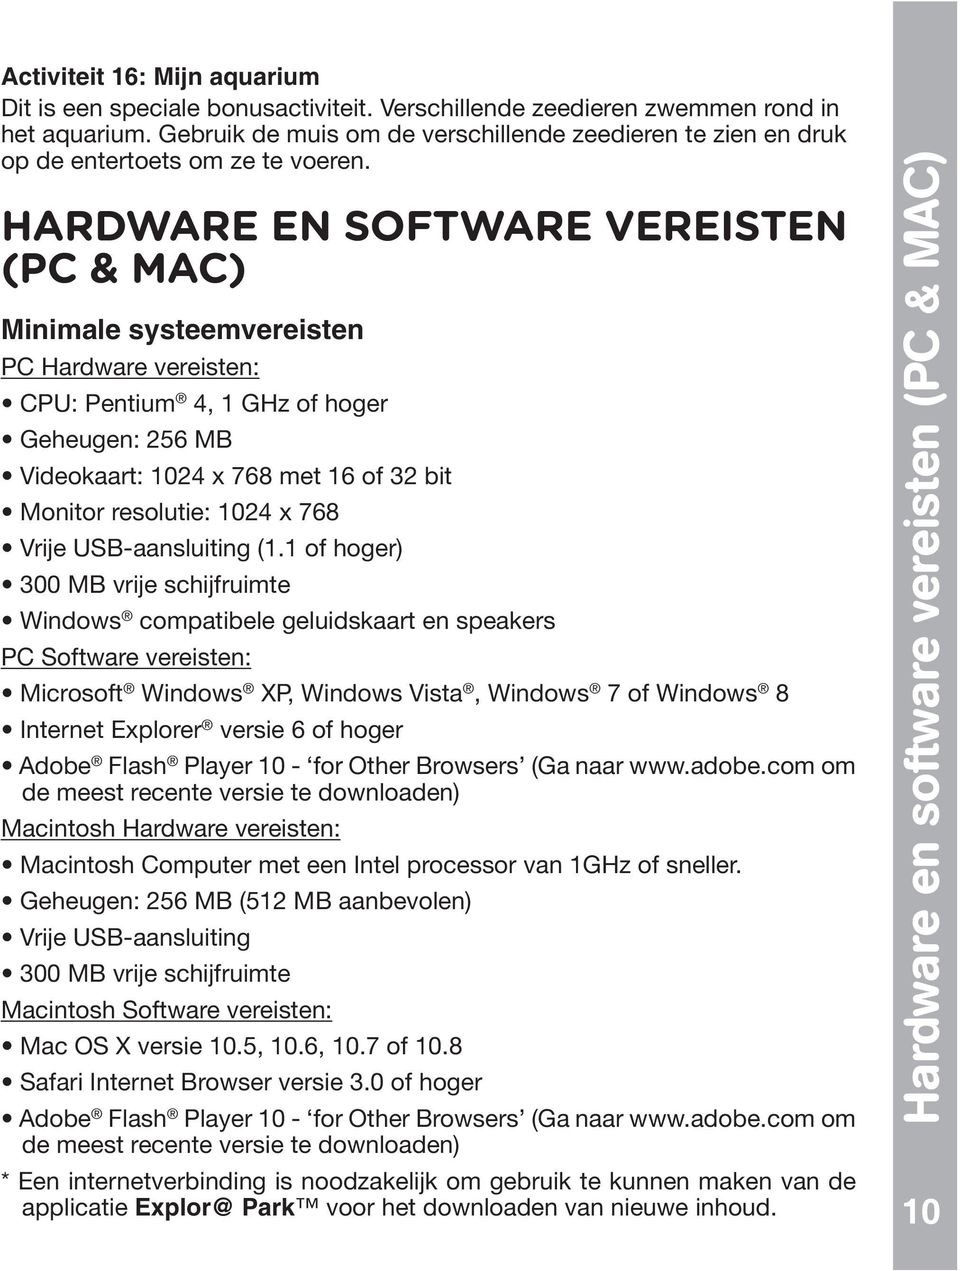 HARDWARE EN SOFTWARE VEREISTEN (PC & MAC) Minimale systeemvereisten PC Hardware vereisten: 4, 1 GHz of hoger compatibele geluidskaart en speakers PC Software vereisten: